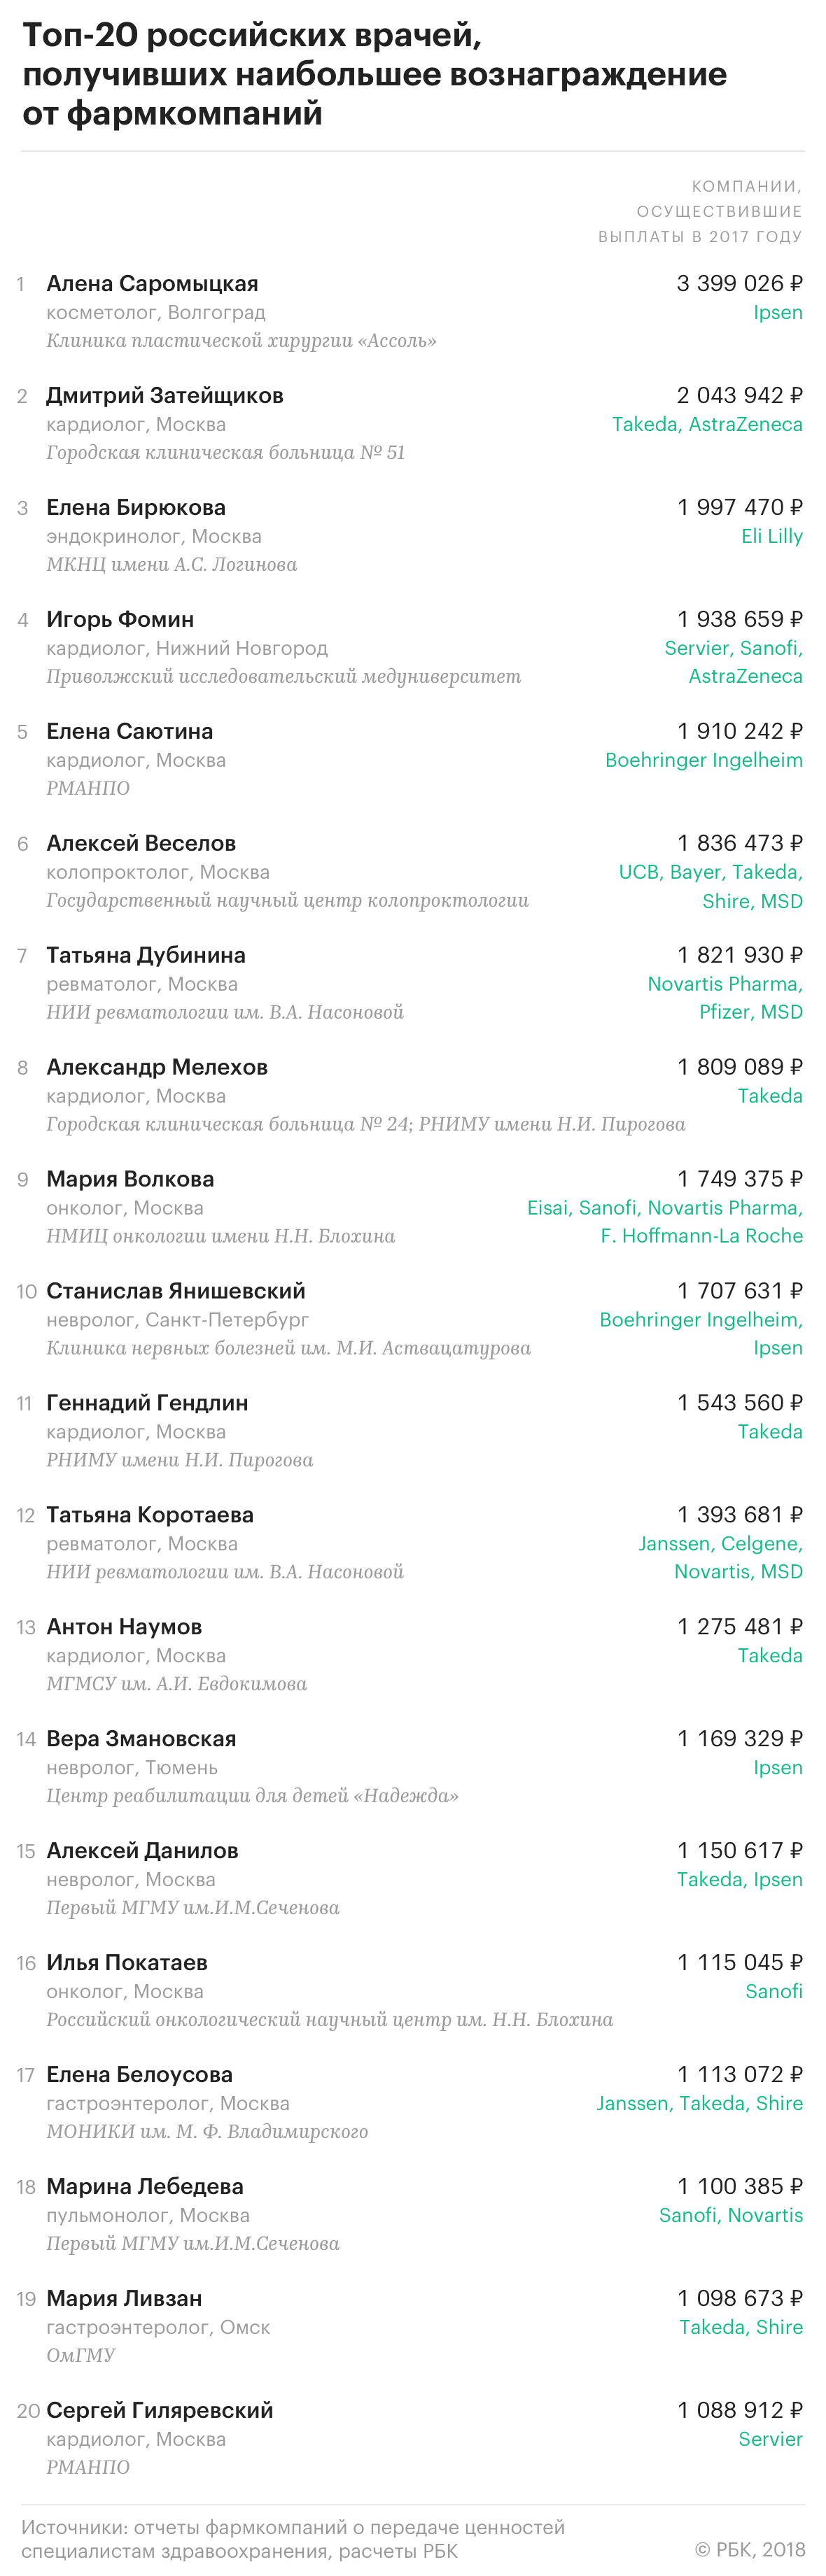 Врачи-миллионеры: фармкомпании раскрыли выплаты медработникам в России